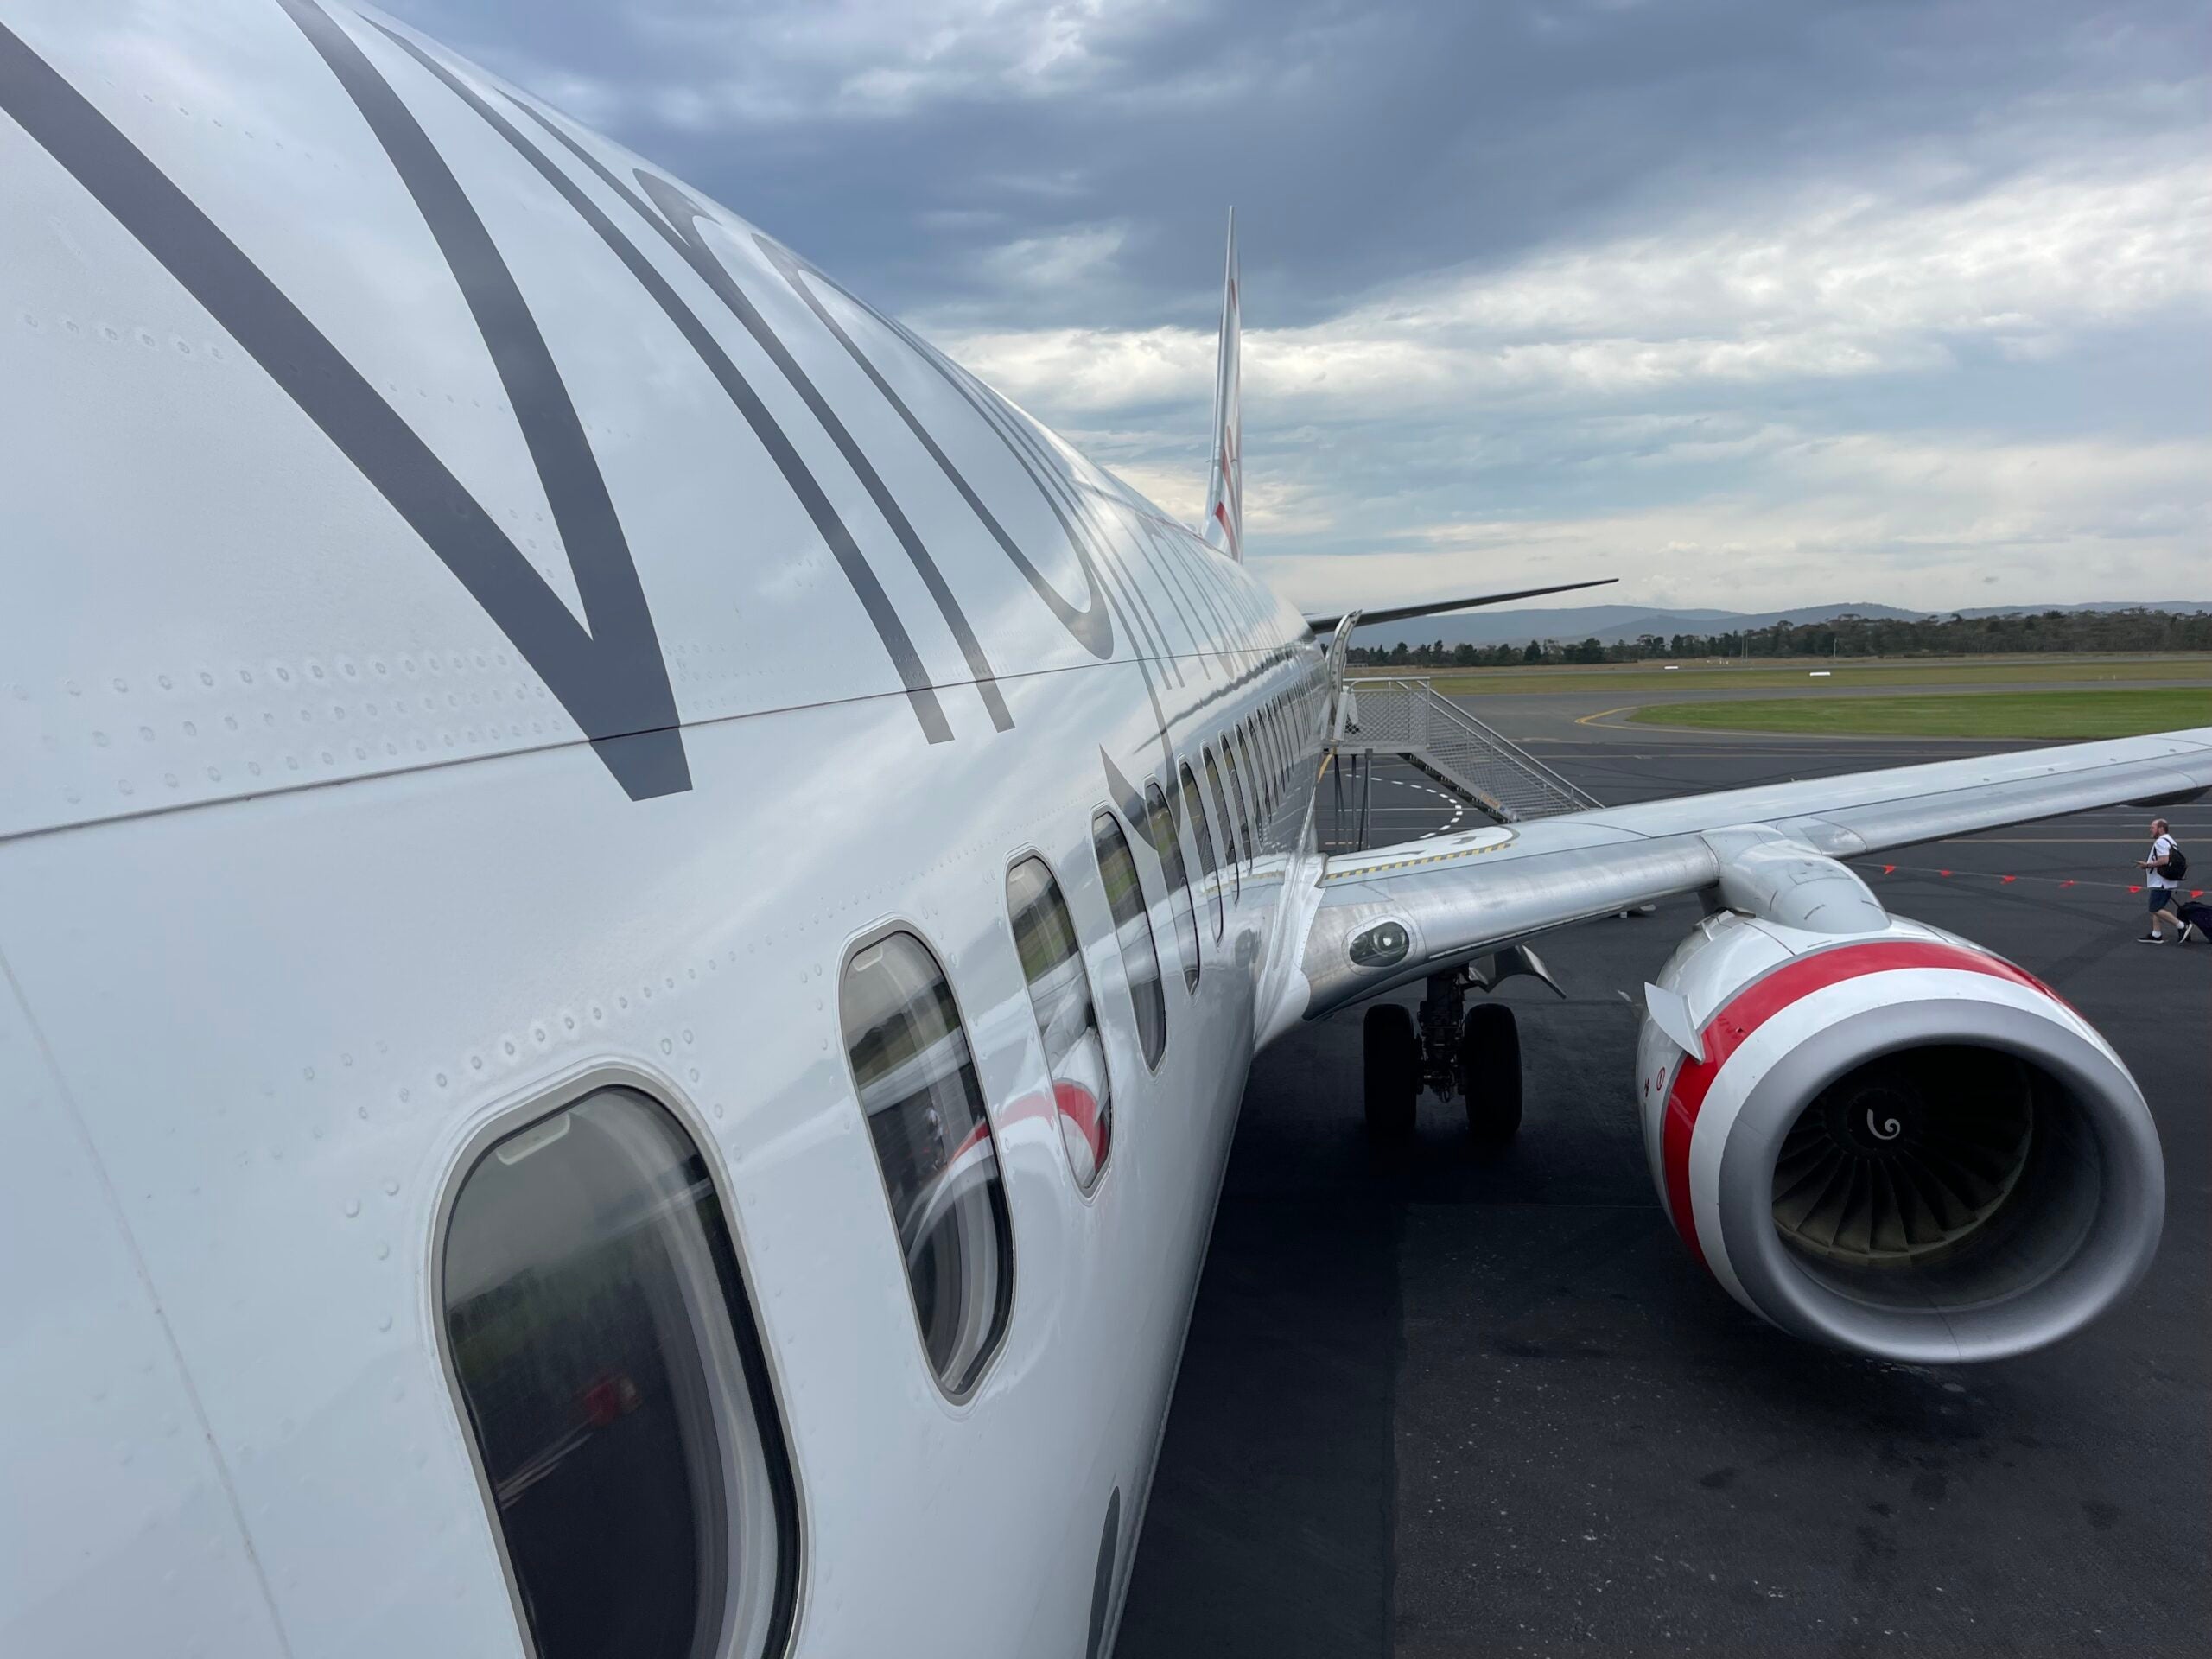 Virgin Australia Boeing 737-800